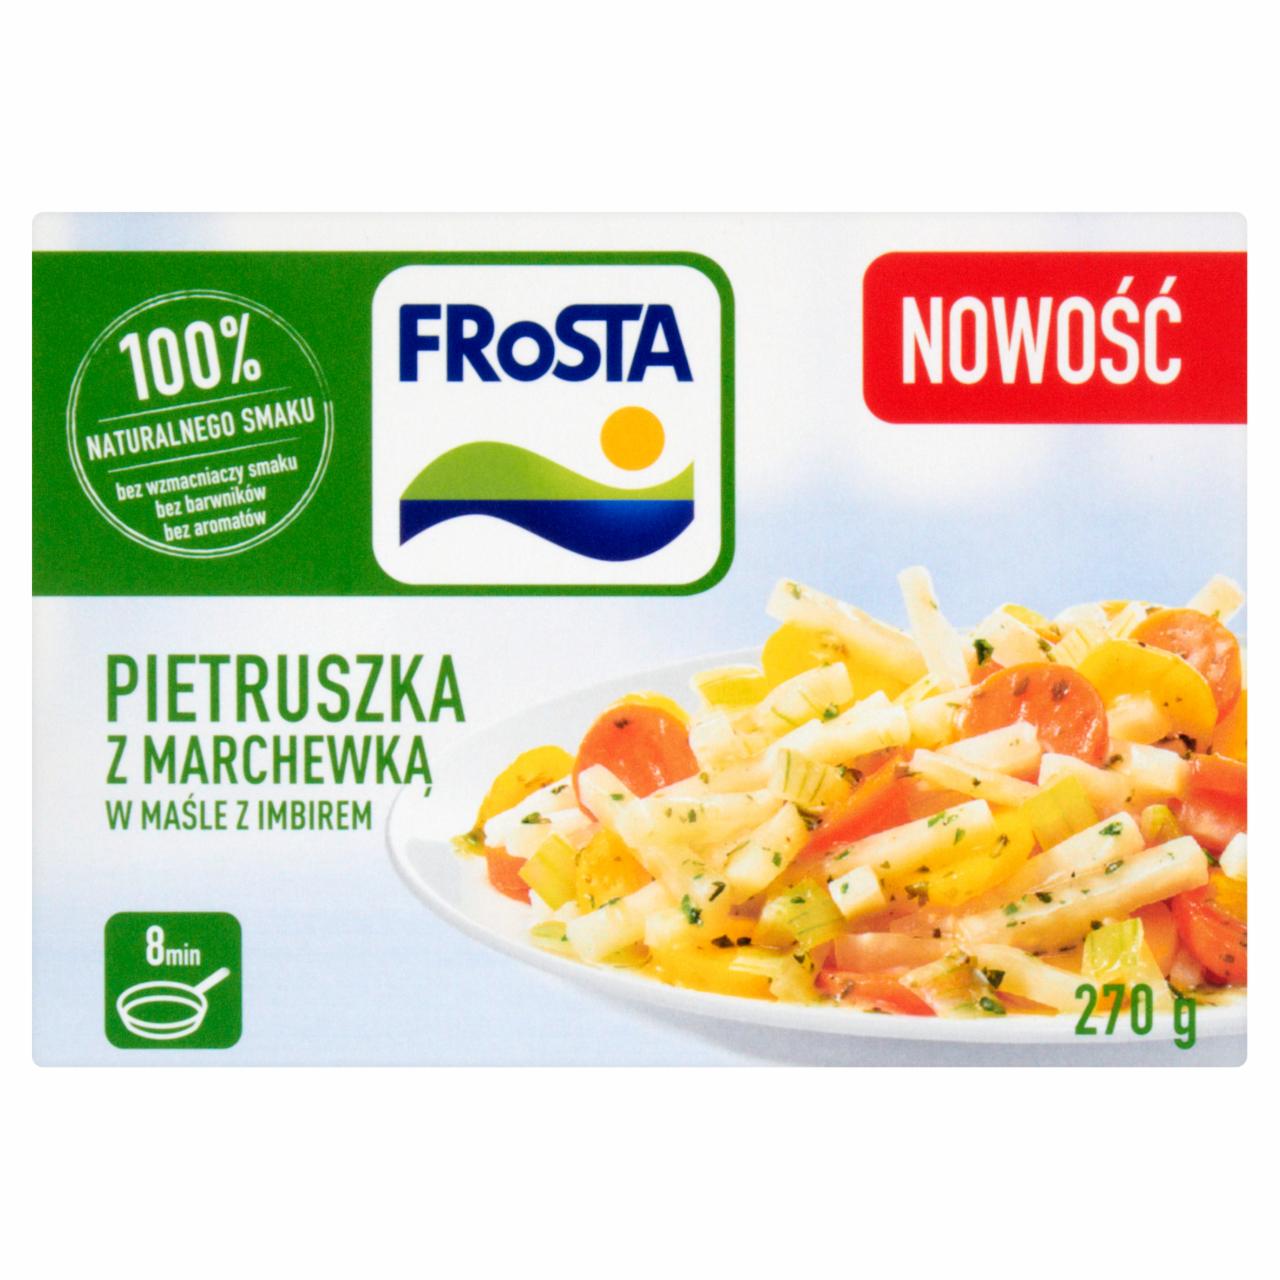 Zdjęcia - FRoSTA Pietruszka z marchewką w maśle z imbirem 270 g